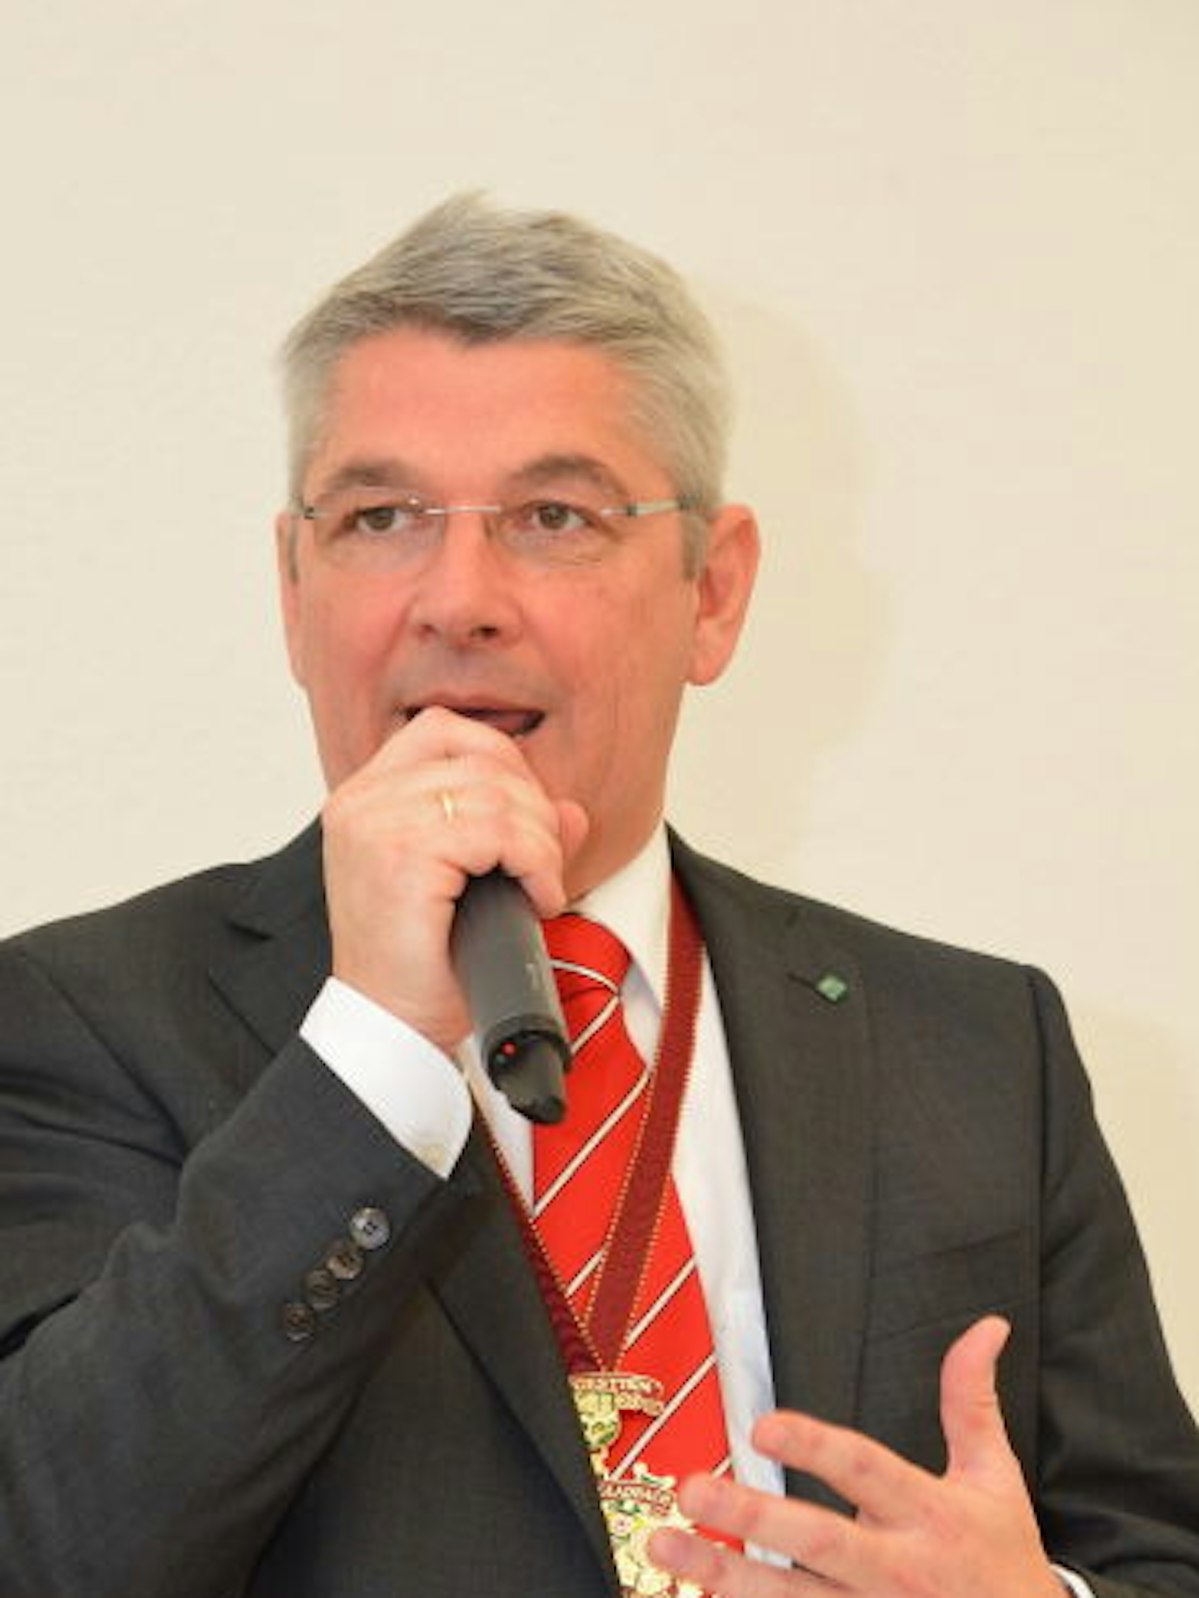 Bürgermeister Lutz Urbach